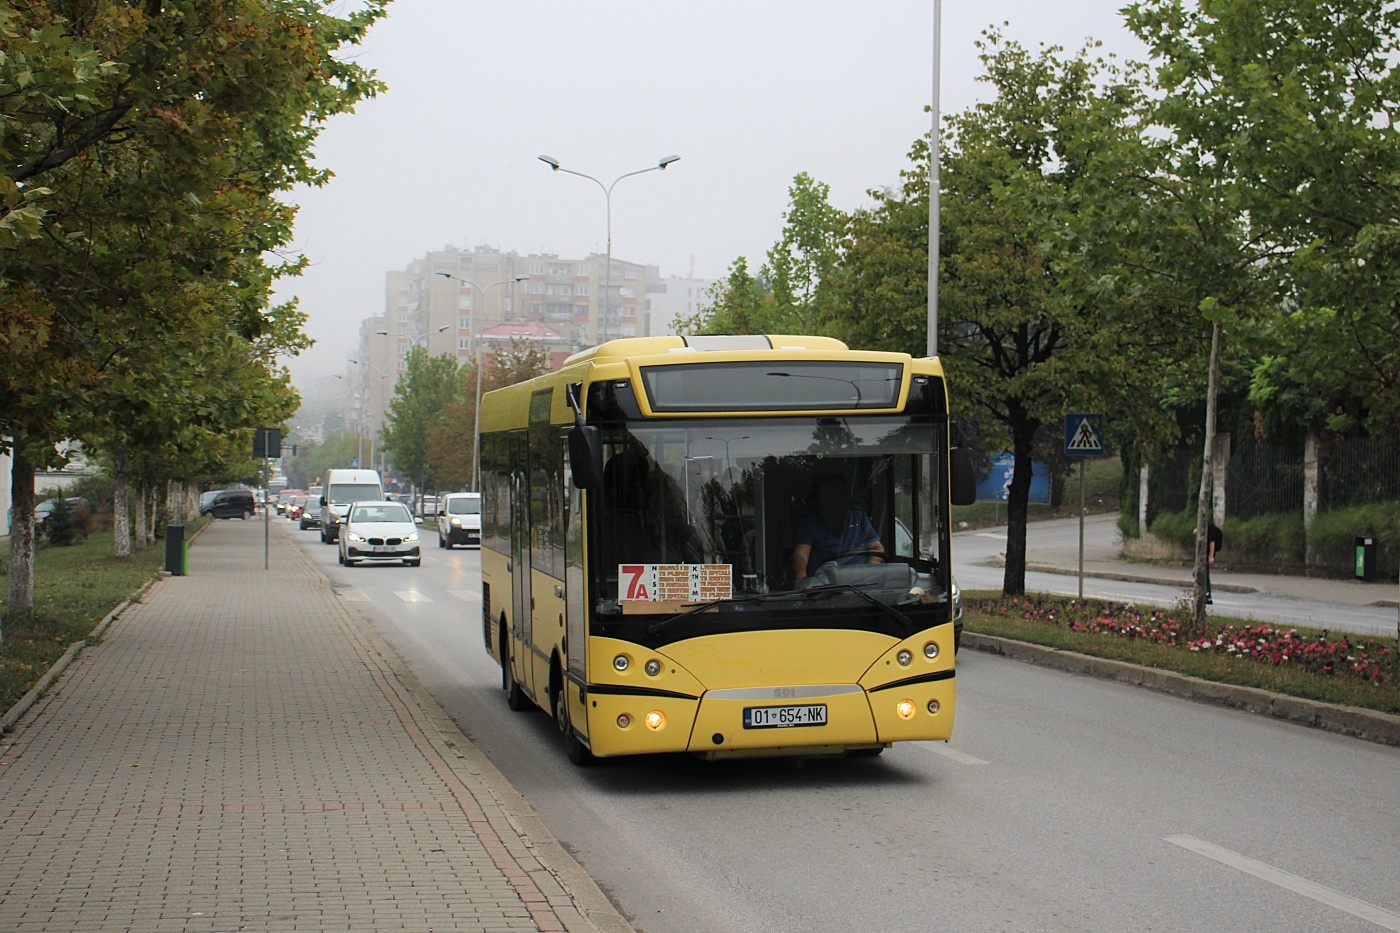 Molitusbus S91 #01-654-NK